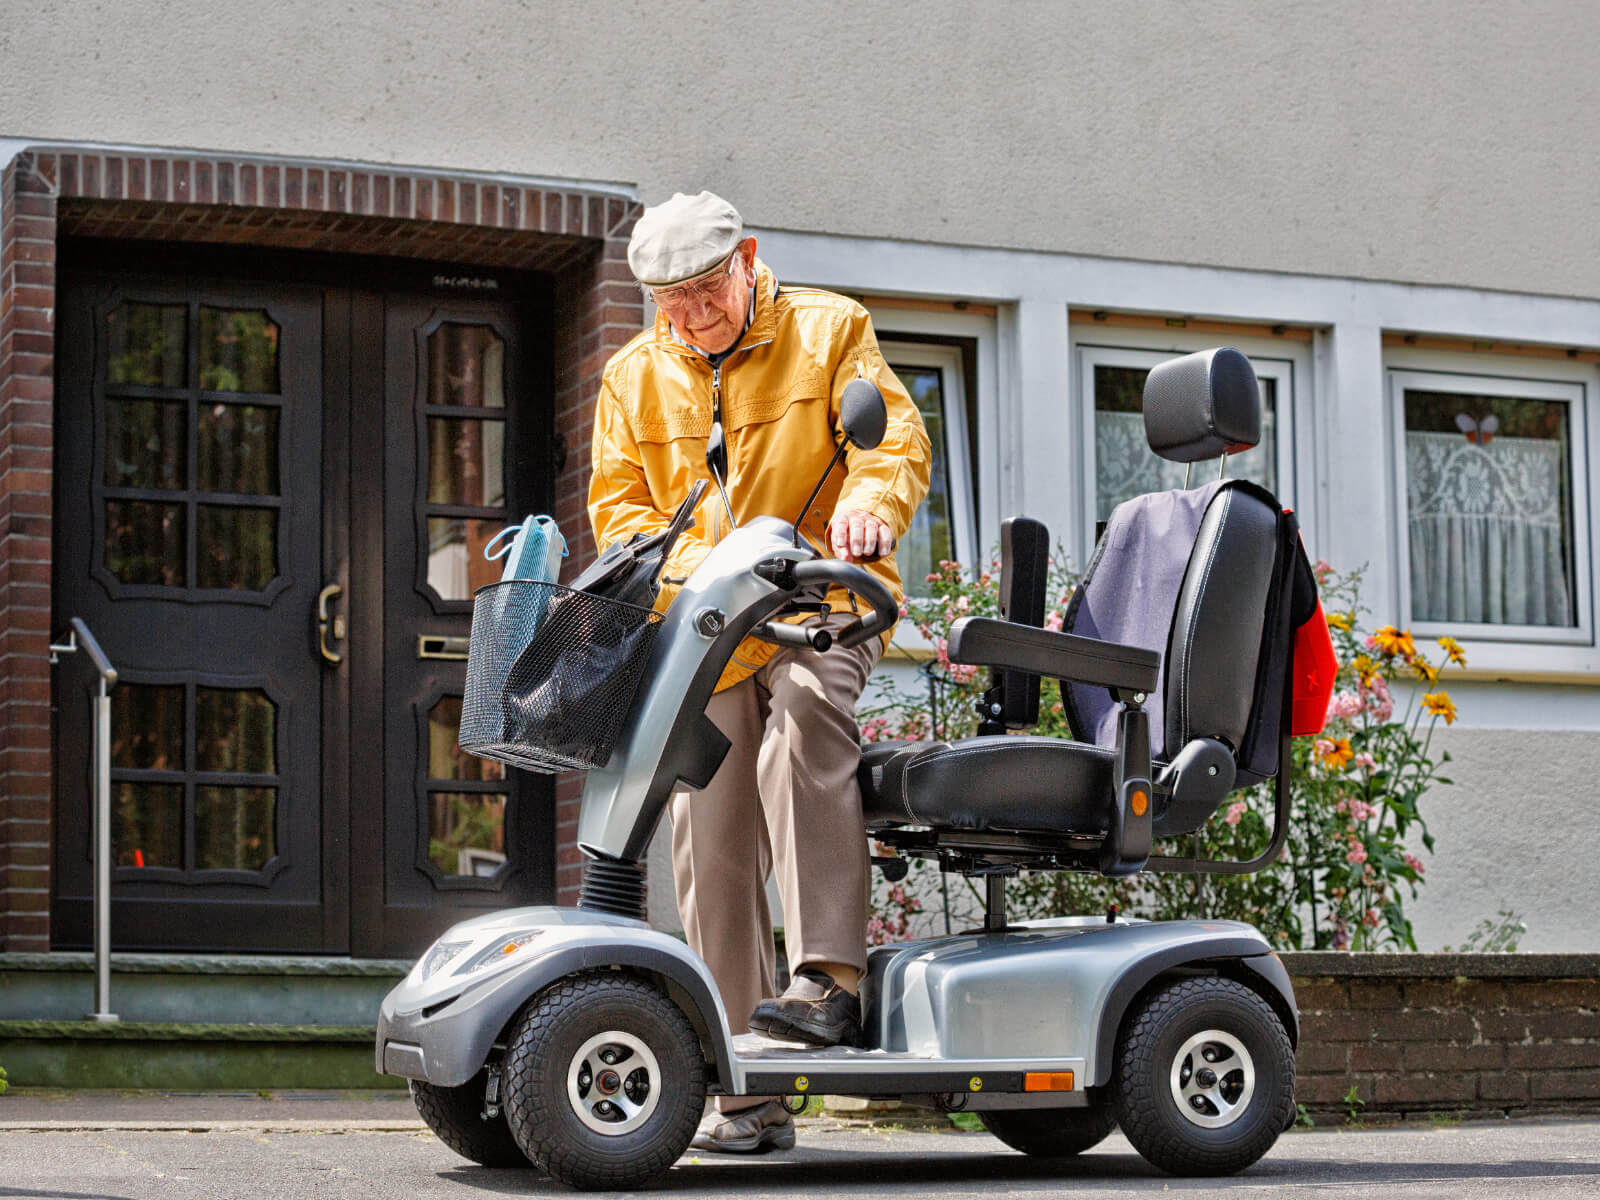 Seniorenmobil und Rollstuhl zubehör